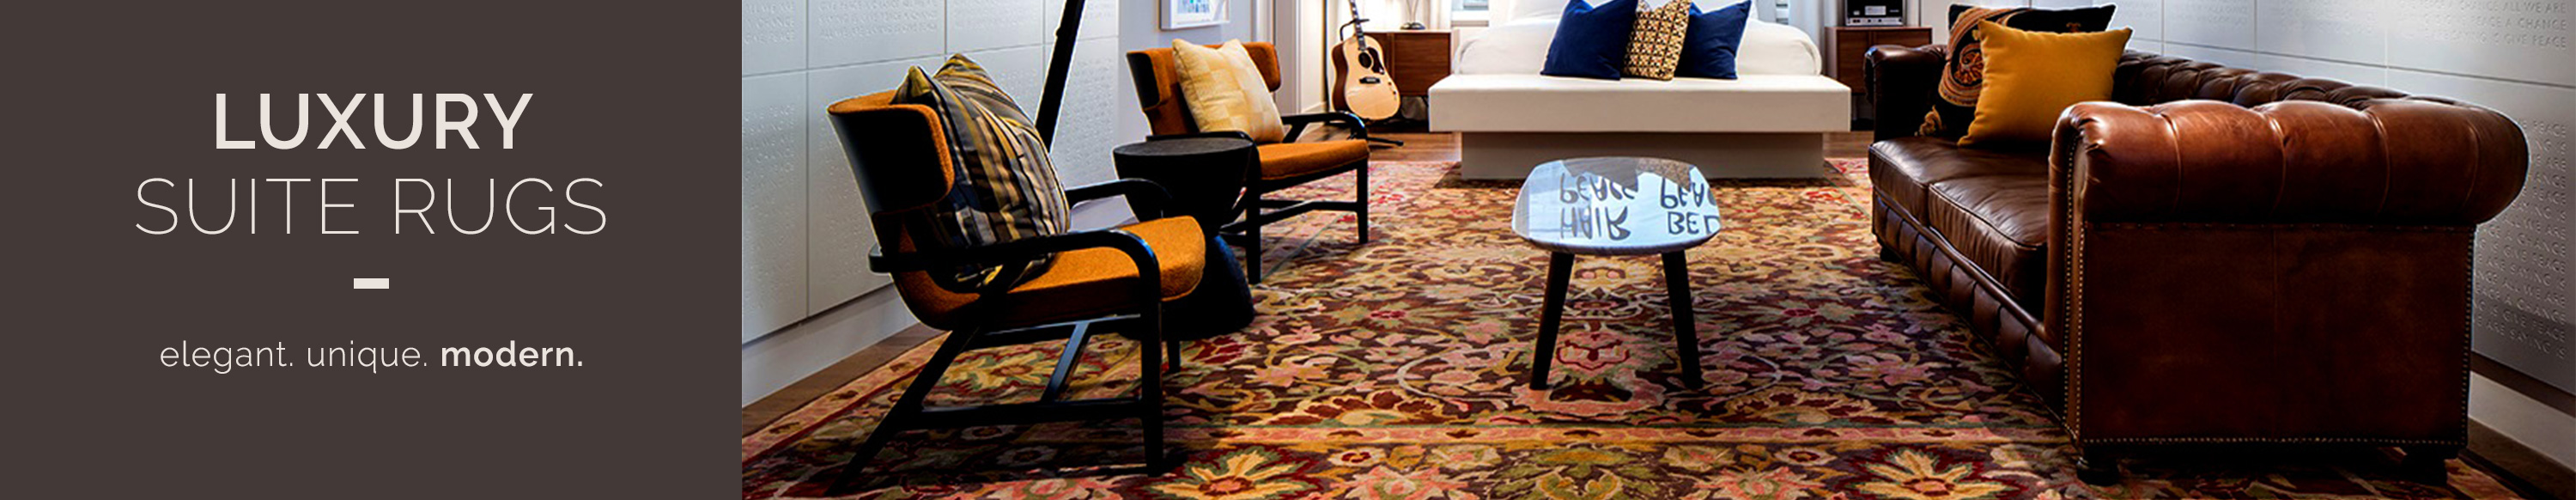 Luxury suite rugs: elegant. Unique. Modern. Explore rug collection.